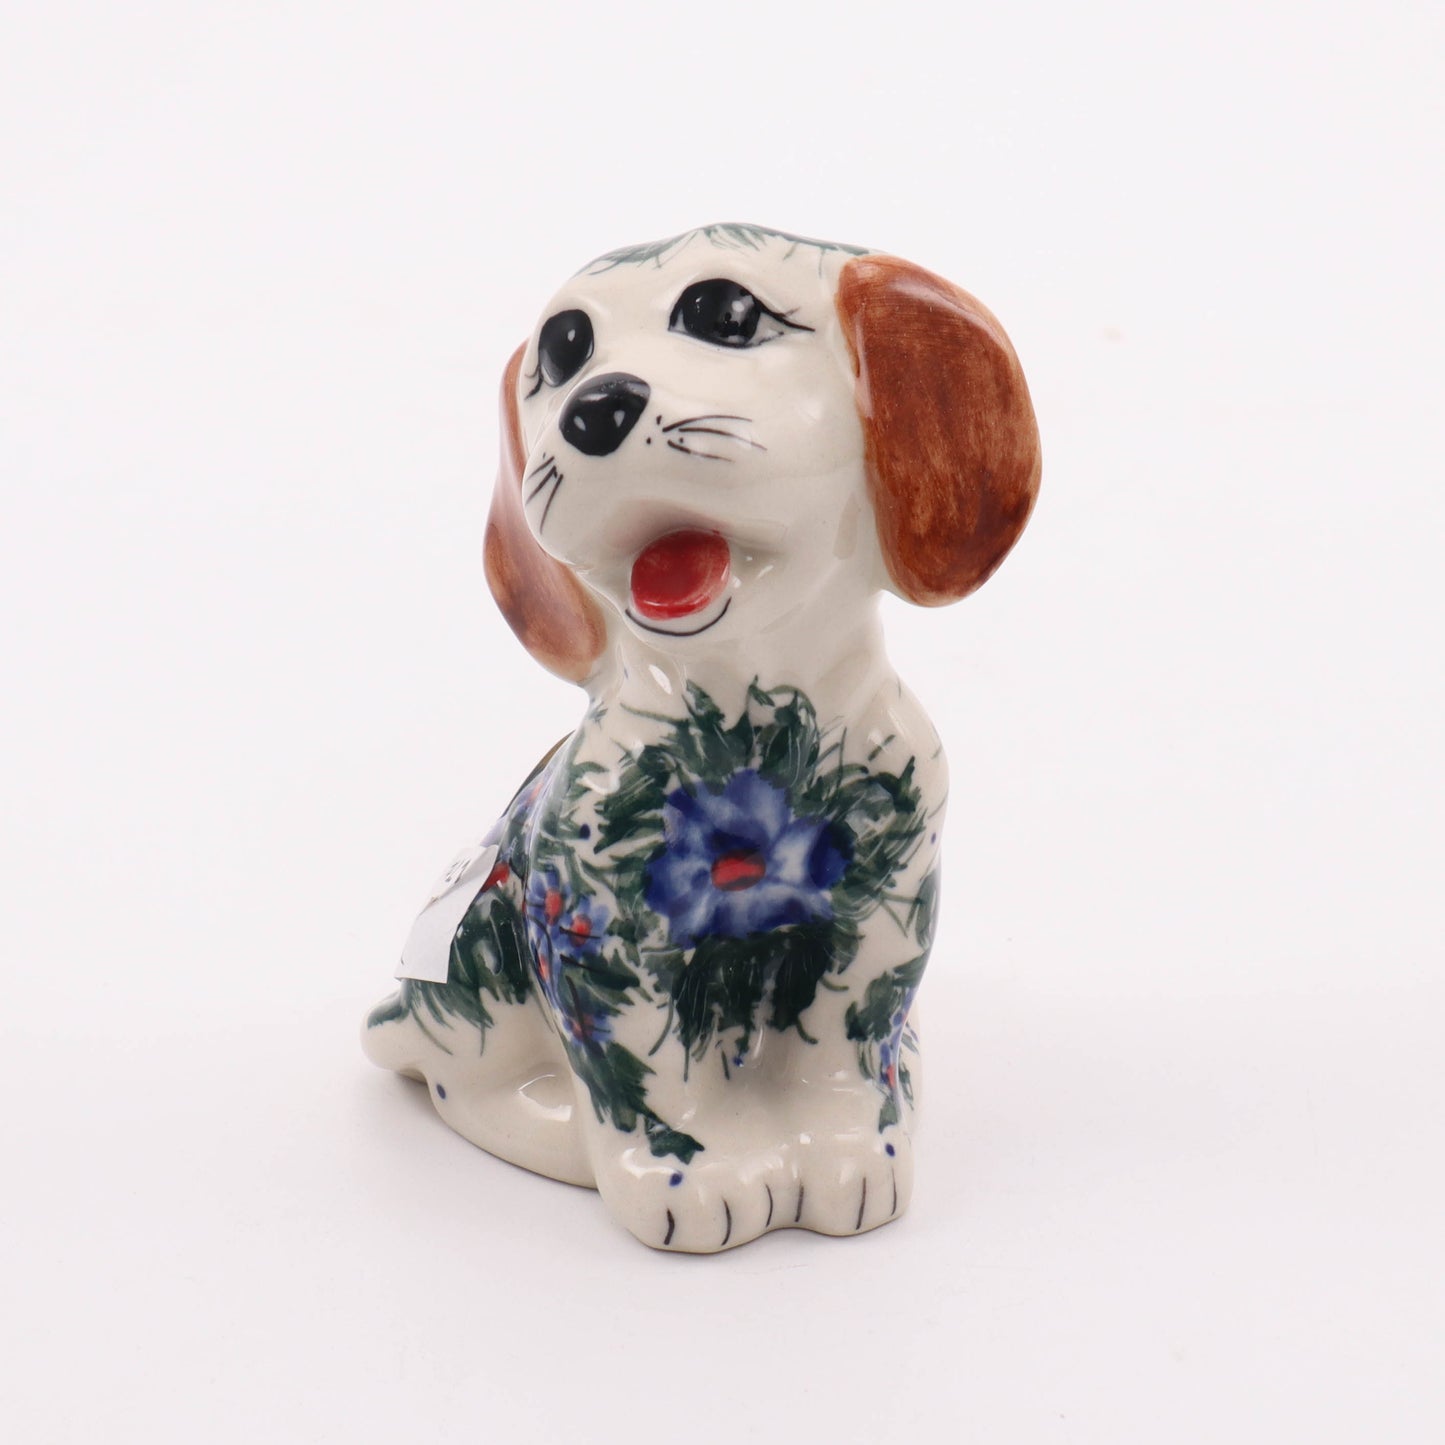 2"x3" Puppy Figurine. Pattern: Brite Bouquet